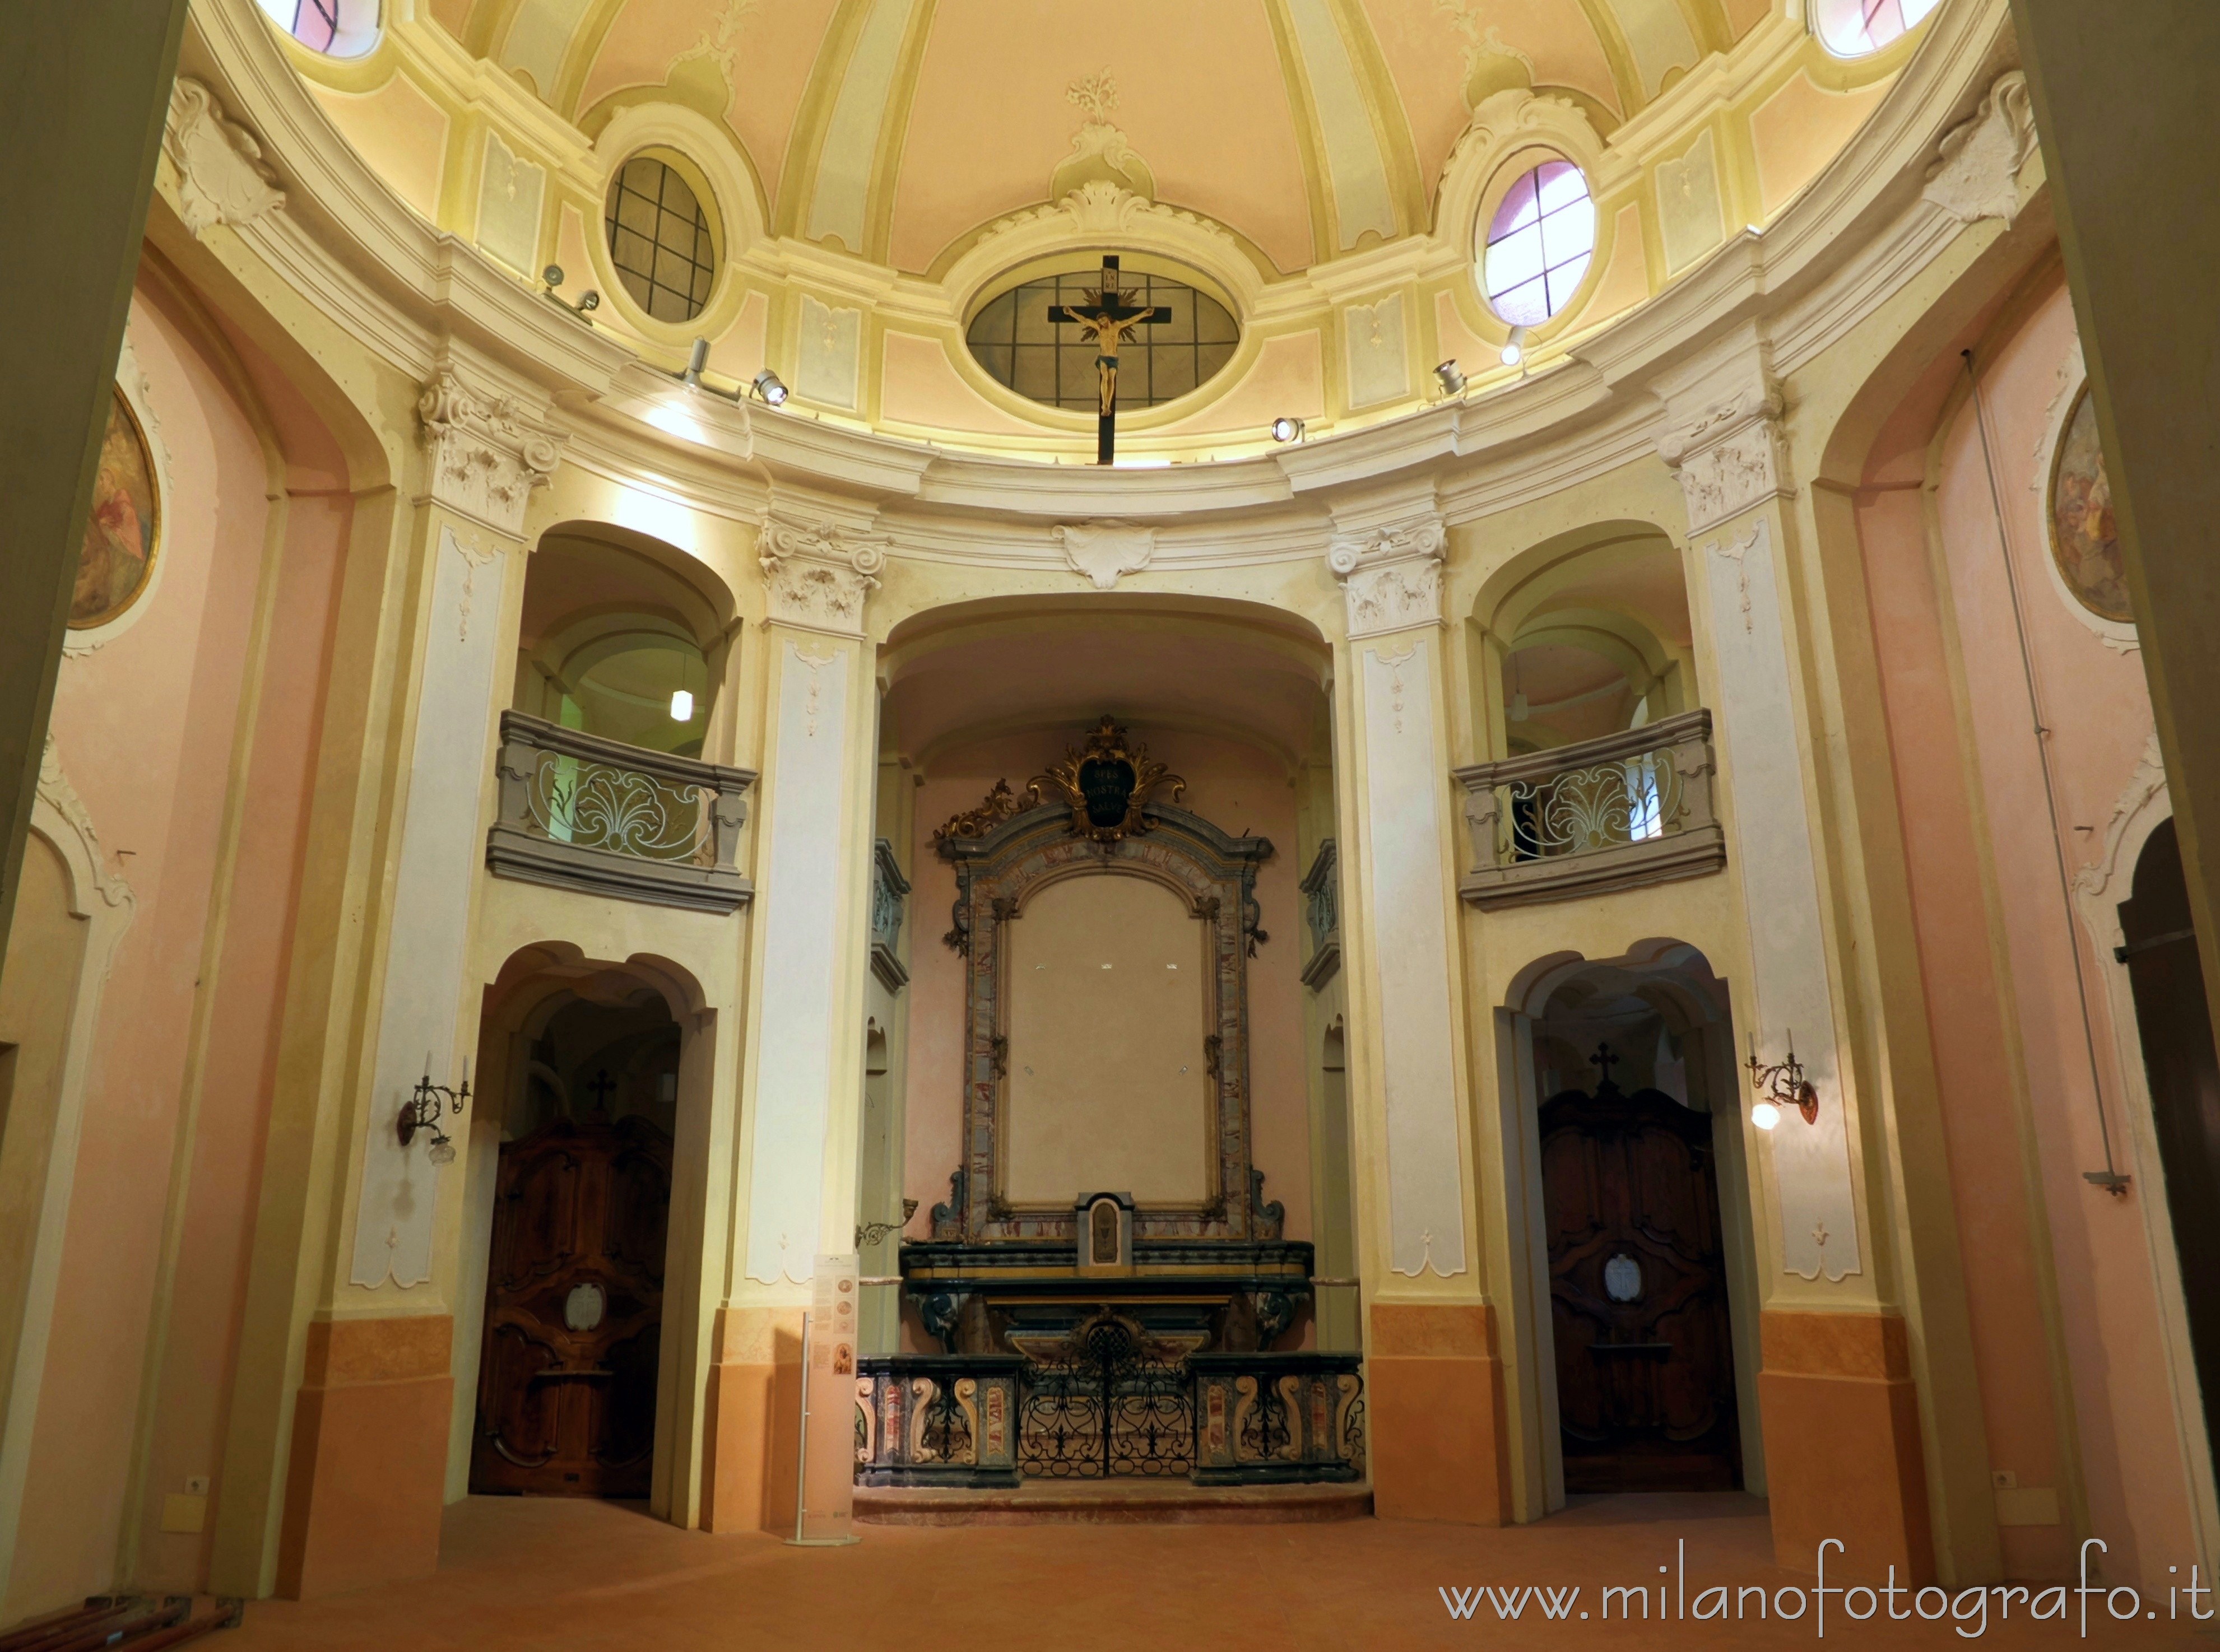 Limbiate (Monza e Brianza): Interno dell'Oratorio di San Francesco in Villa Pusterla Arconati Crivelli - Limbiate (Monza e Brianza)